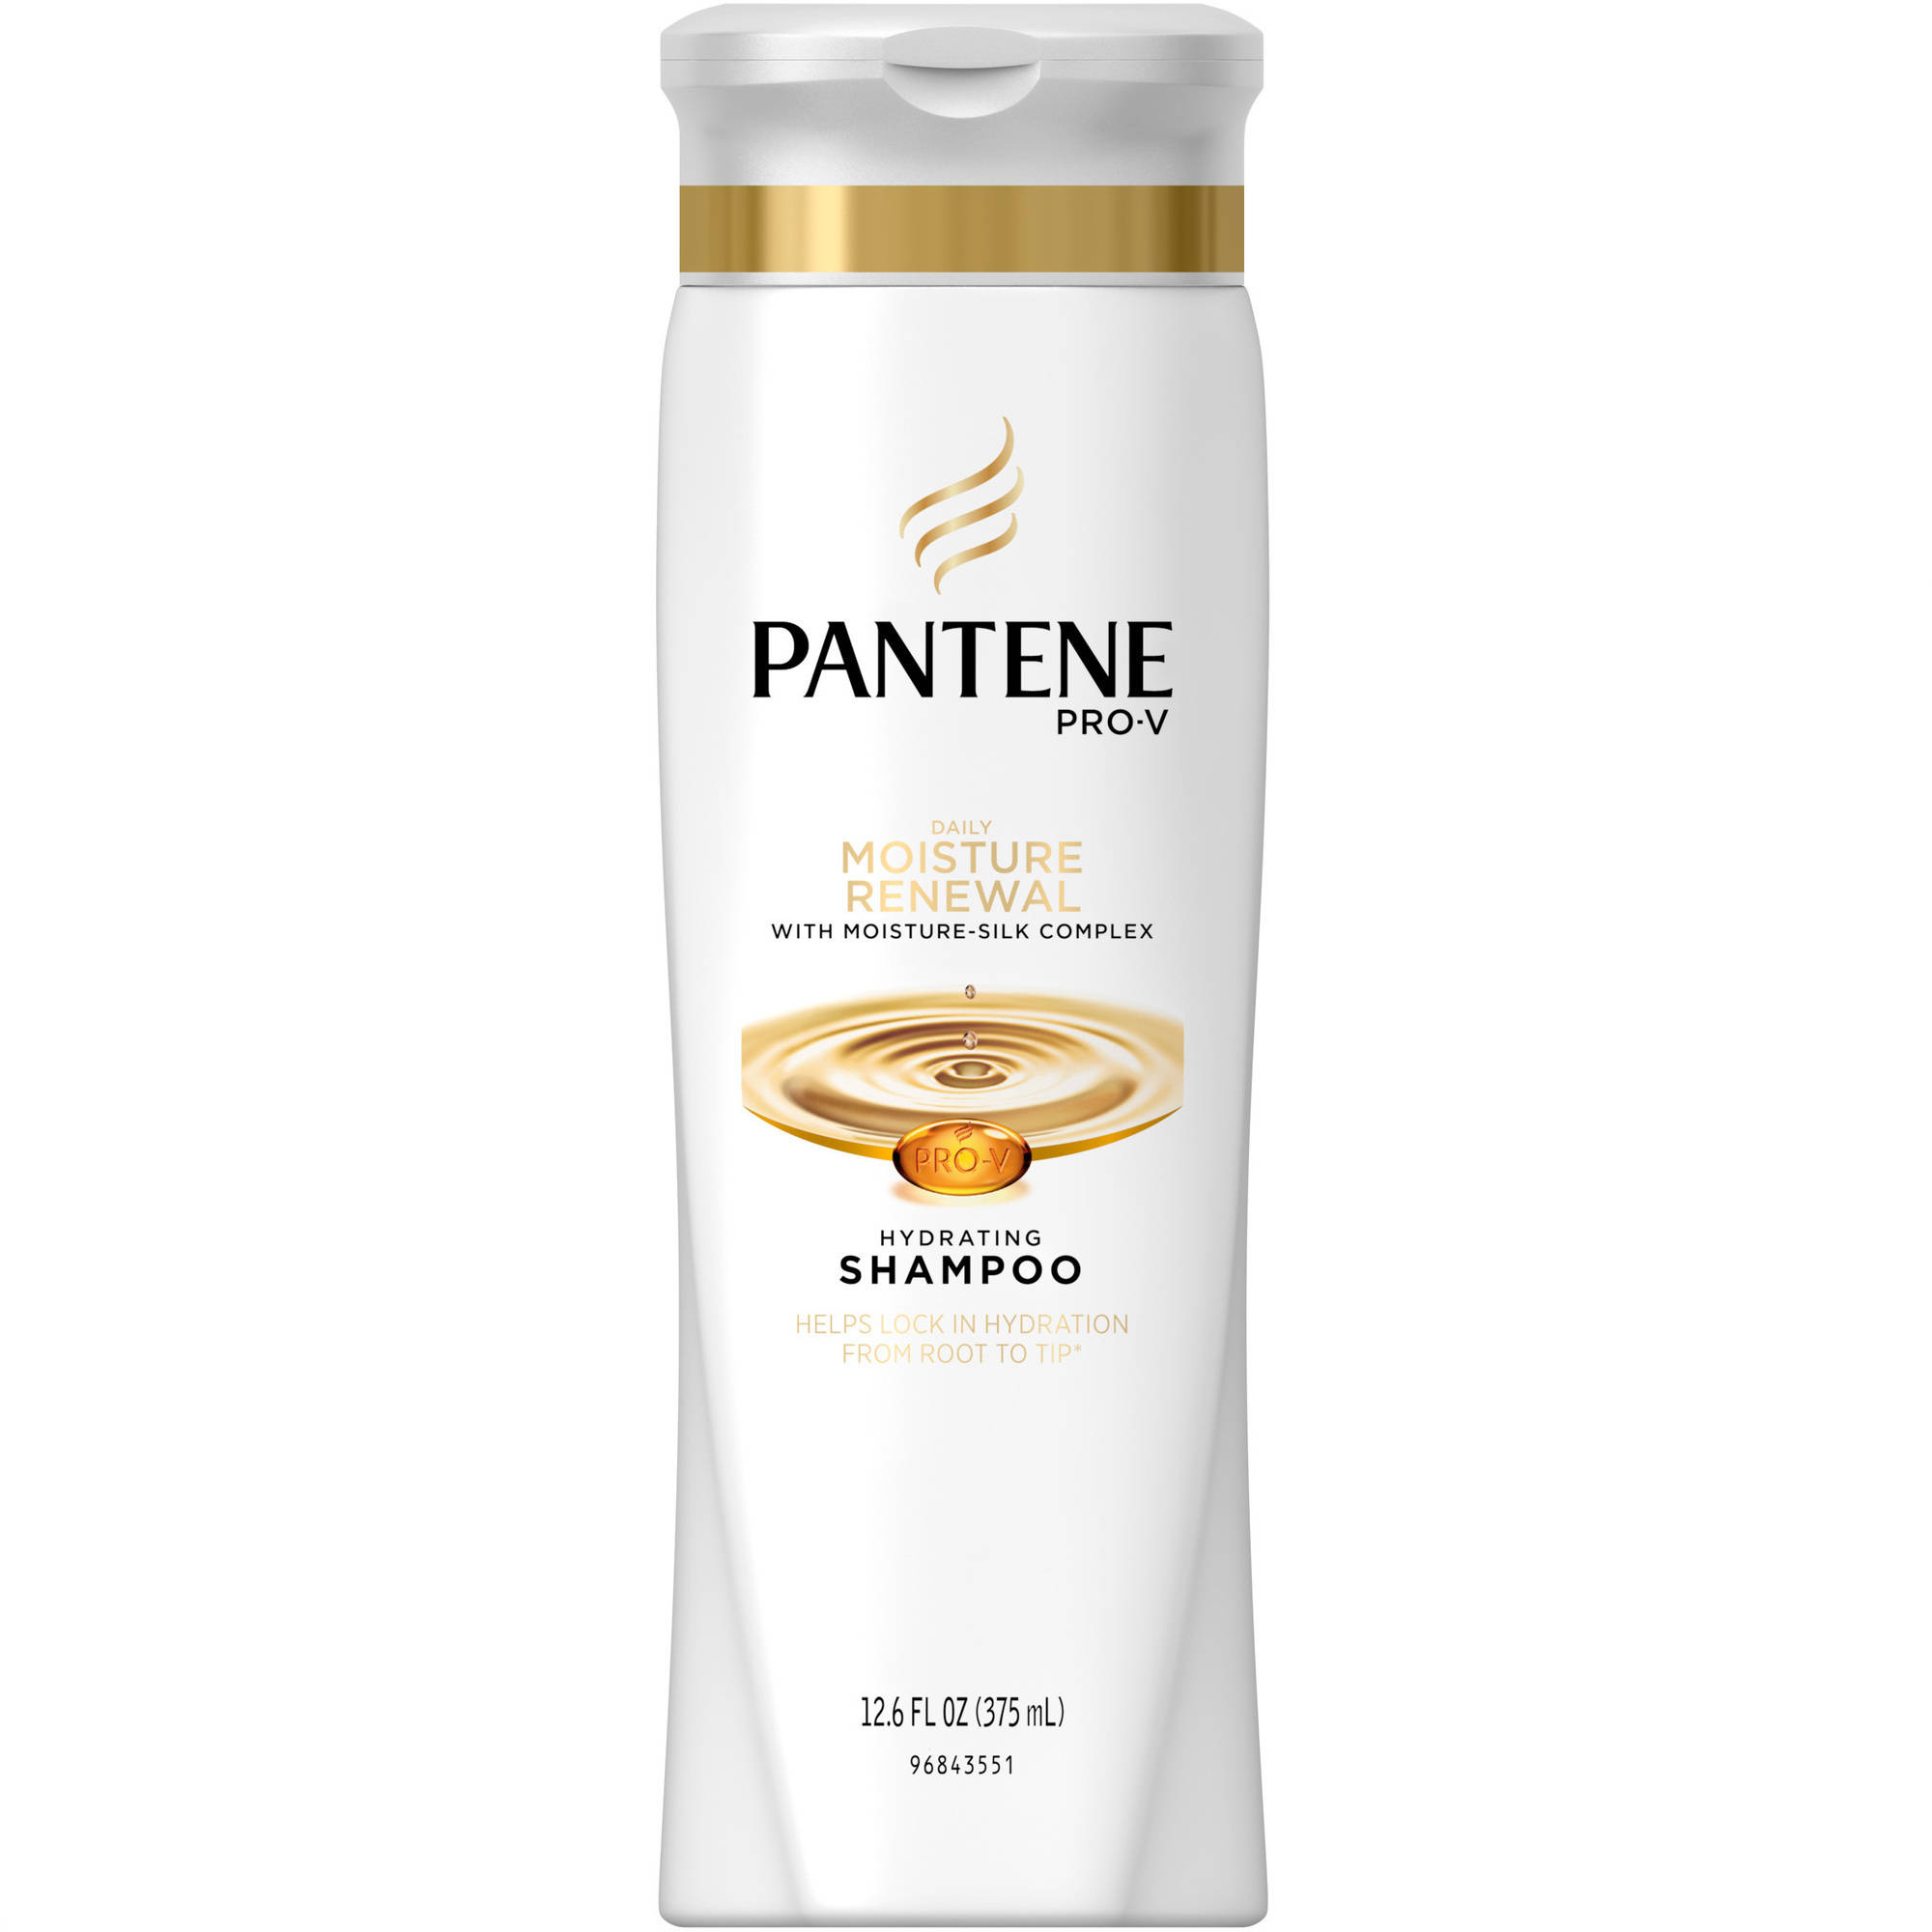 Free Printable Coupons For Pantene Shampoo